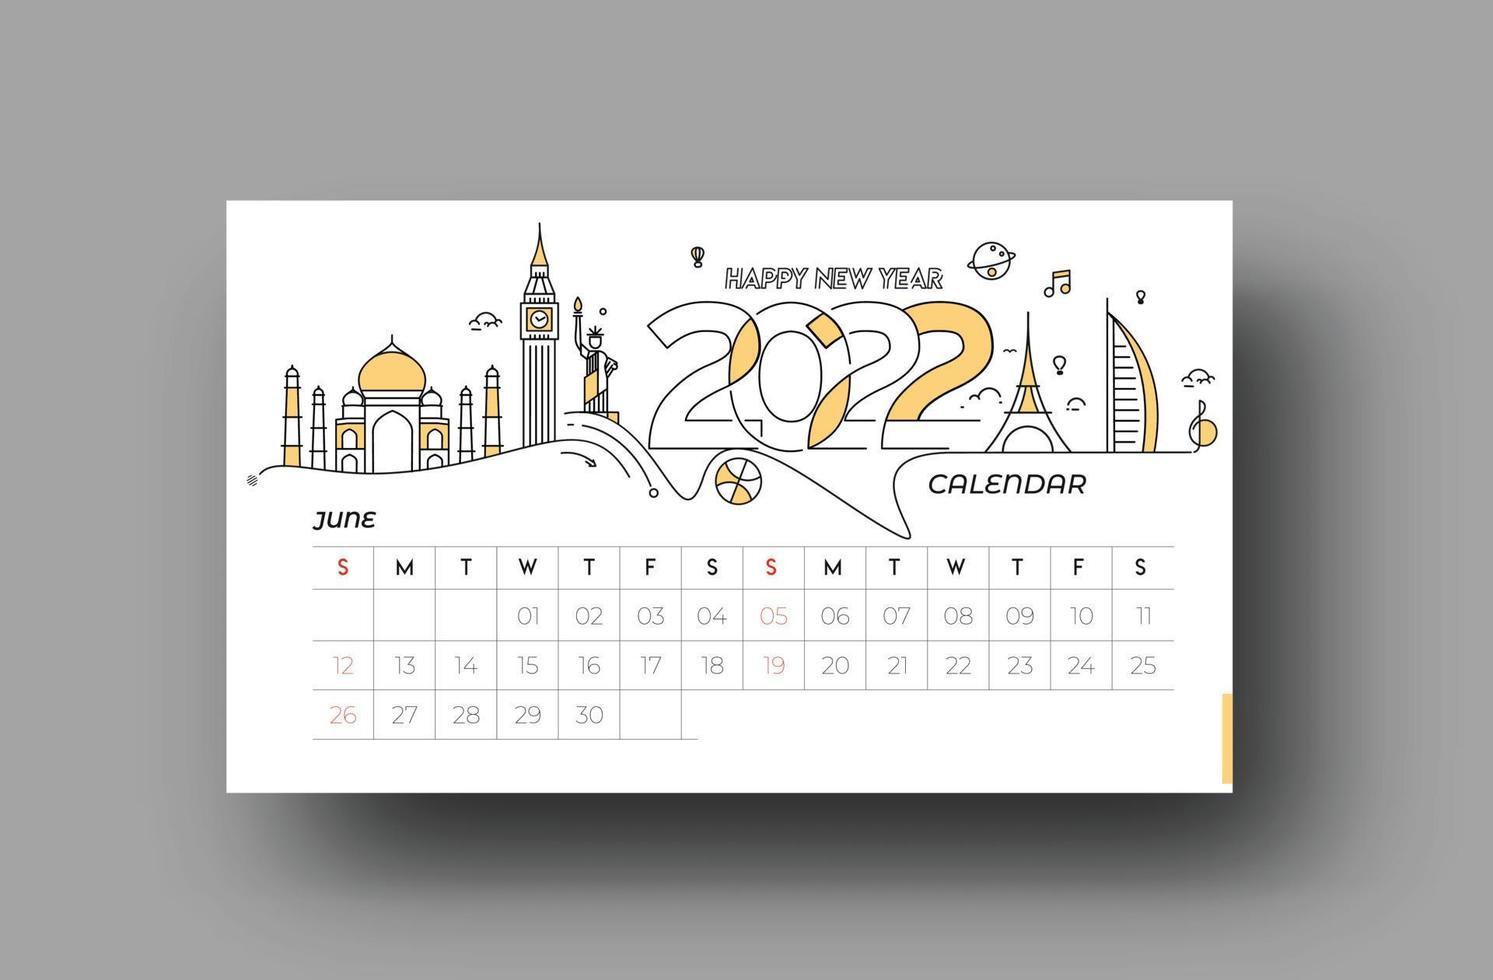 Feliz año nuevo 2022 calendario de febrero - elementos de diseño de vacaciones de año nuevo para tarjetas navideñas, cartel de banner de calendario para decoraciones, fondo de ilustración vectorial. vector